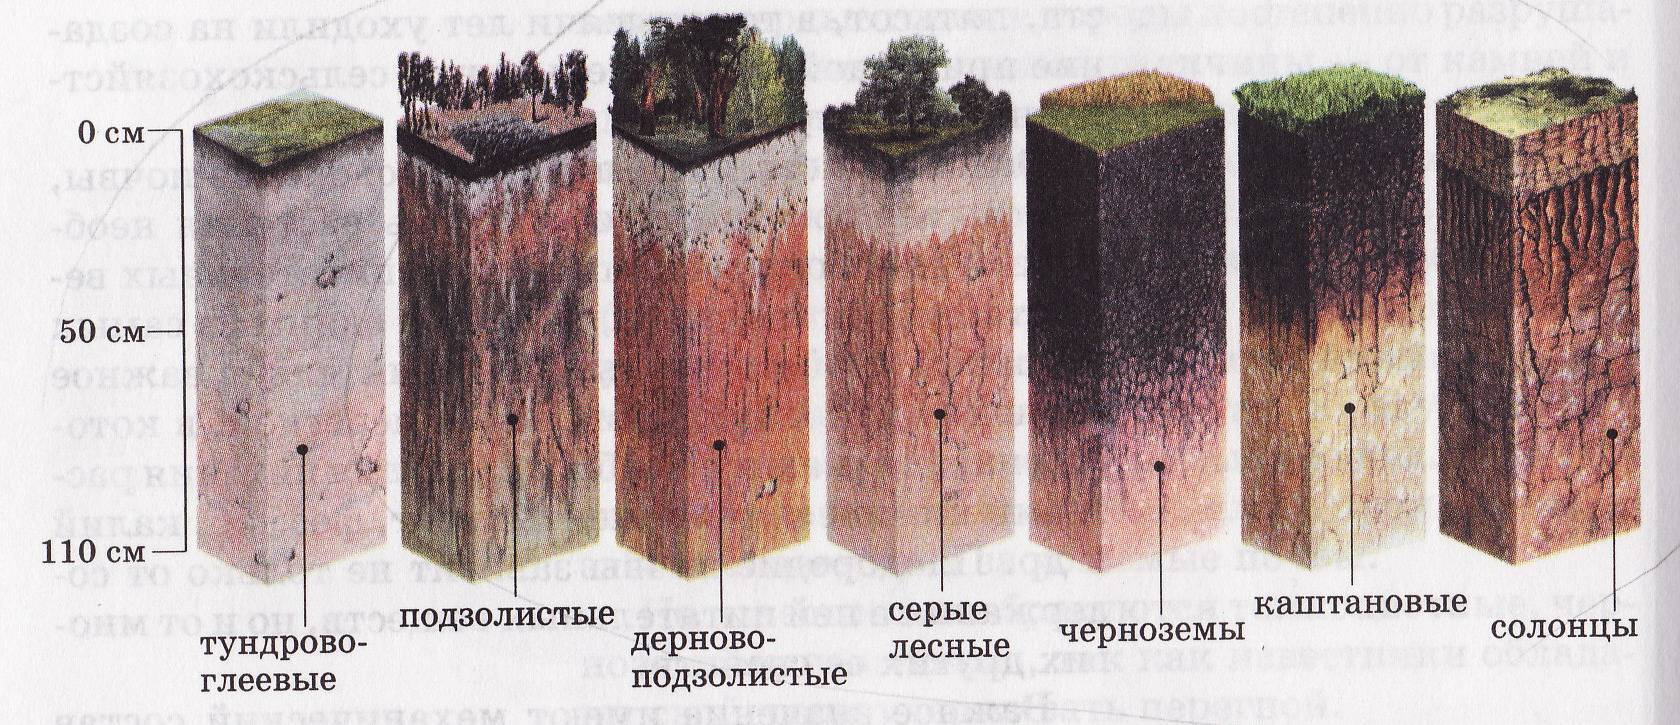 Какие почвы относятся к азональным типам подзолистые. Дерново-подзолистая, серая Лесная, чернозем почвенные горизонты. Подзолистая почва профиль почвы. Пахотные дерново-подзолистые почвы профиль. Почвенный профиль подзолистых почв.